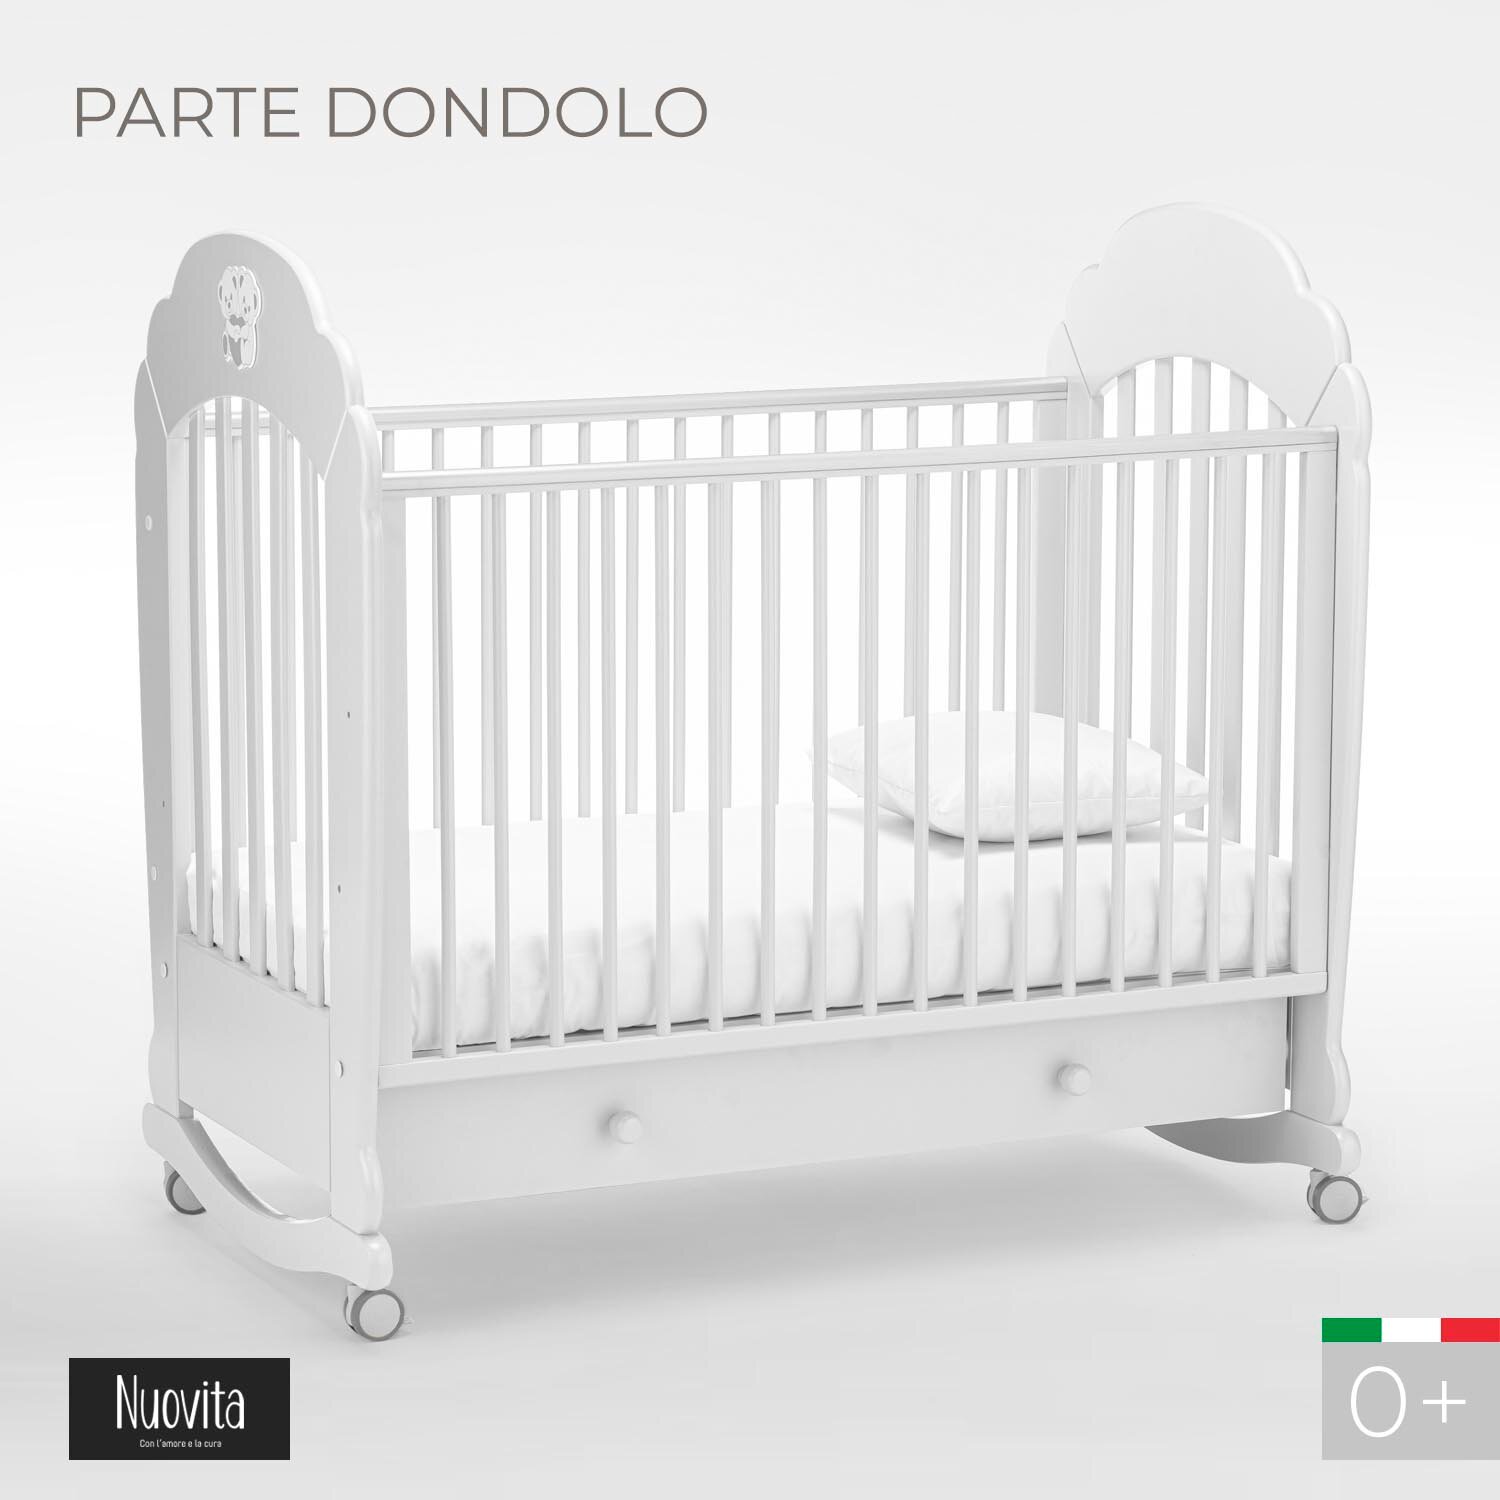 Детская кровать Nuovita Parte dondolo Bianco, белая - фото №3